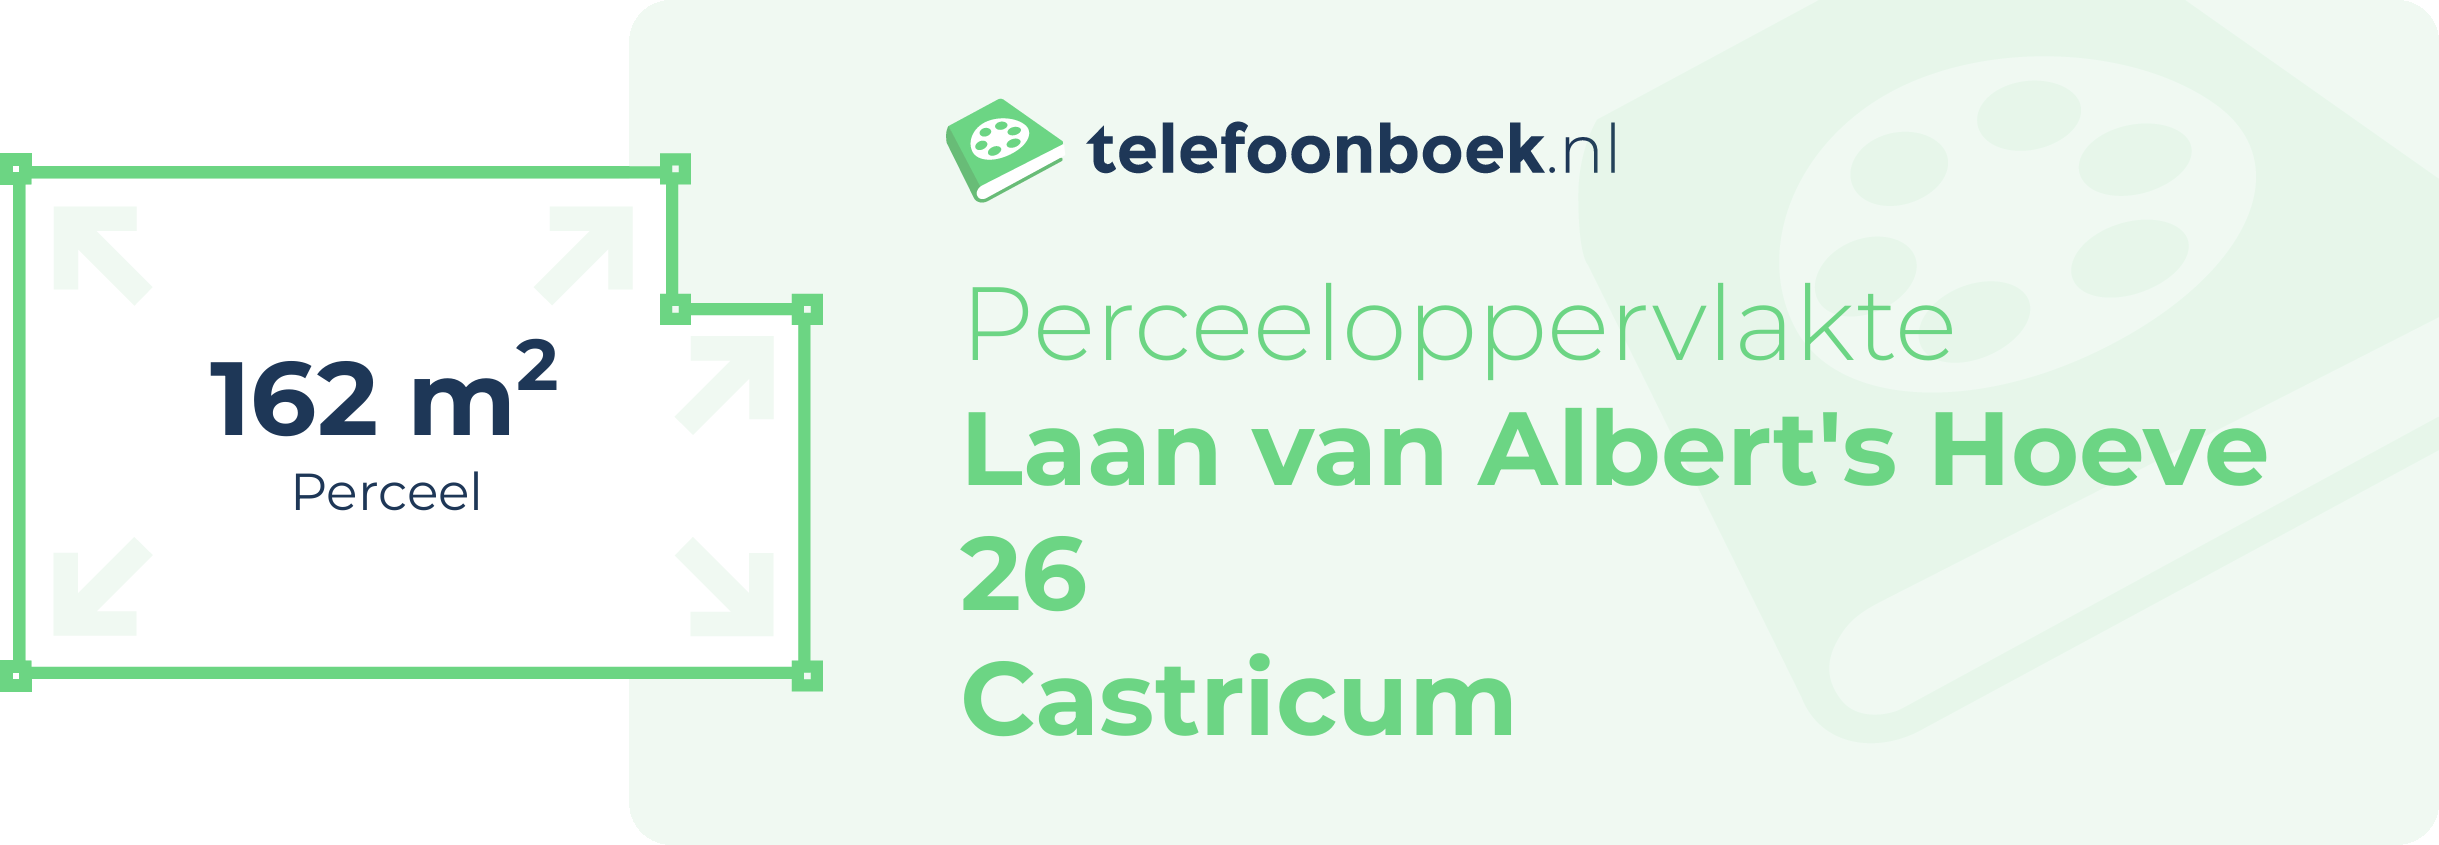 Perceeloppervlakte Laan Van Albert's Hoeve 26 Castricum